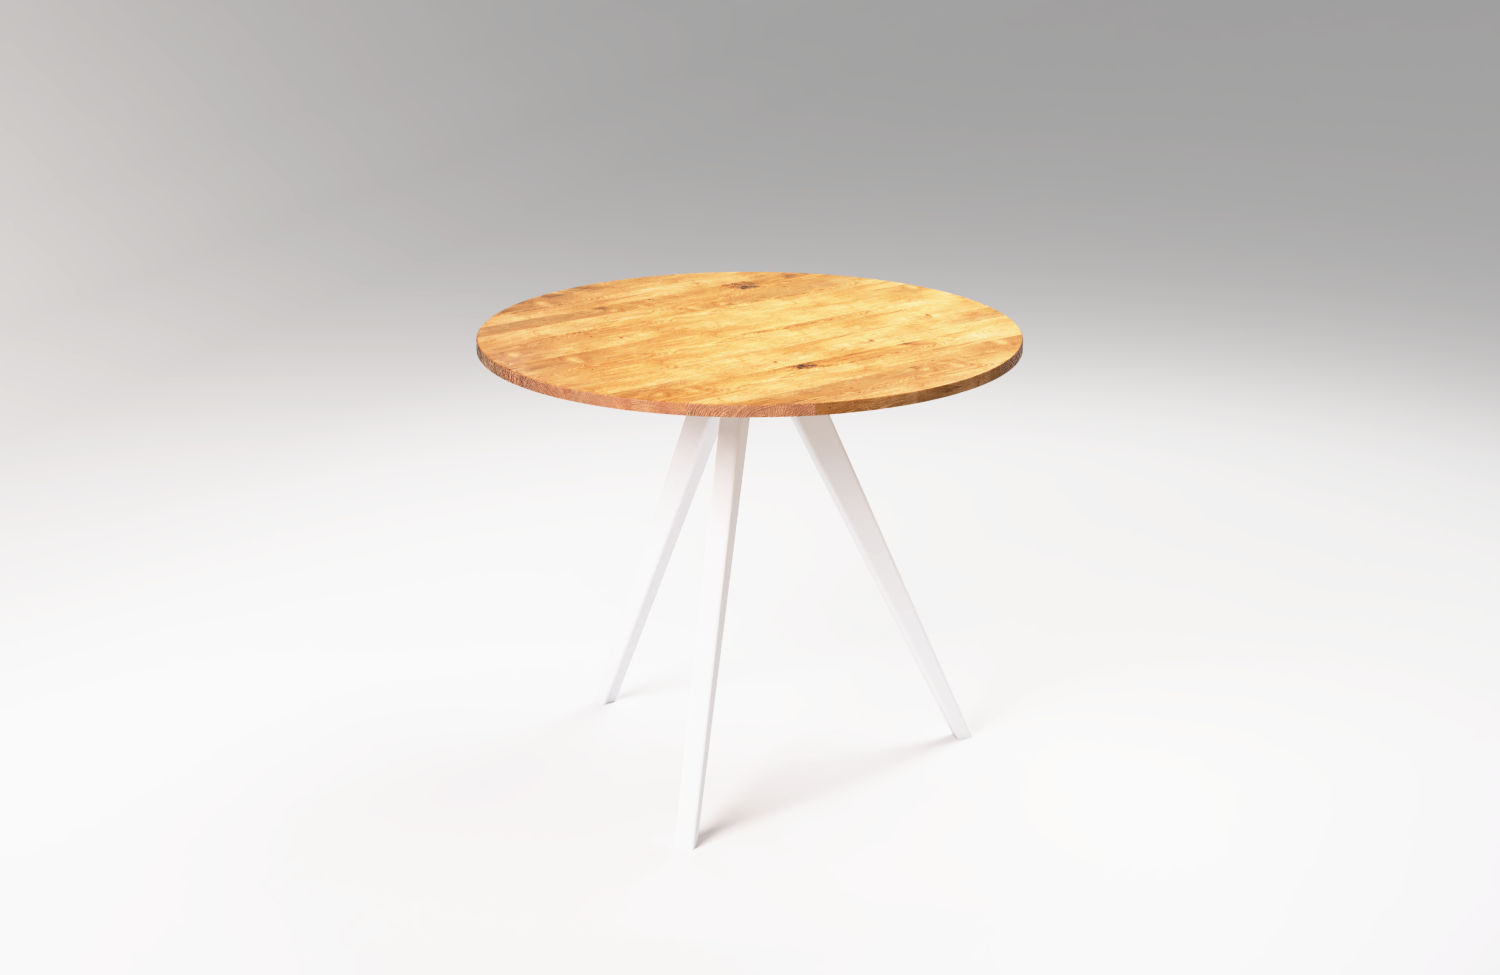 Drewniany stół okrągły MÅNE. Nowoczesne wnętrze w skandynawskim stylu. Stół ręcznie robiony z drewna dębowego.